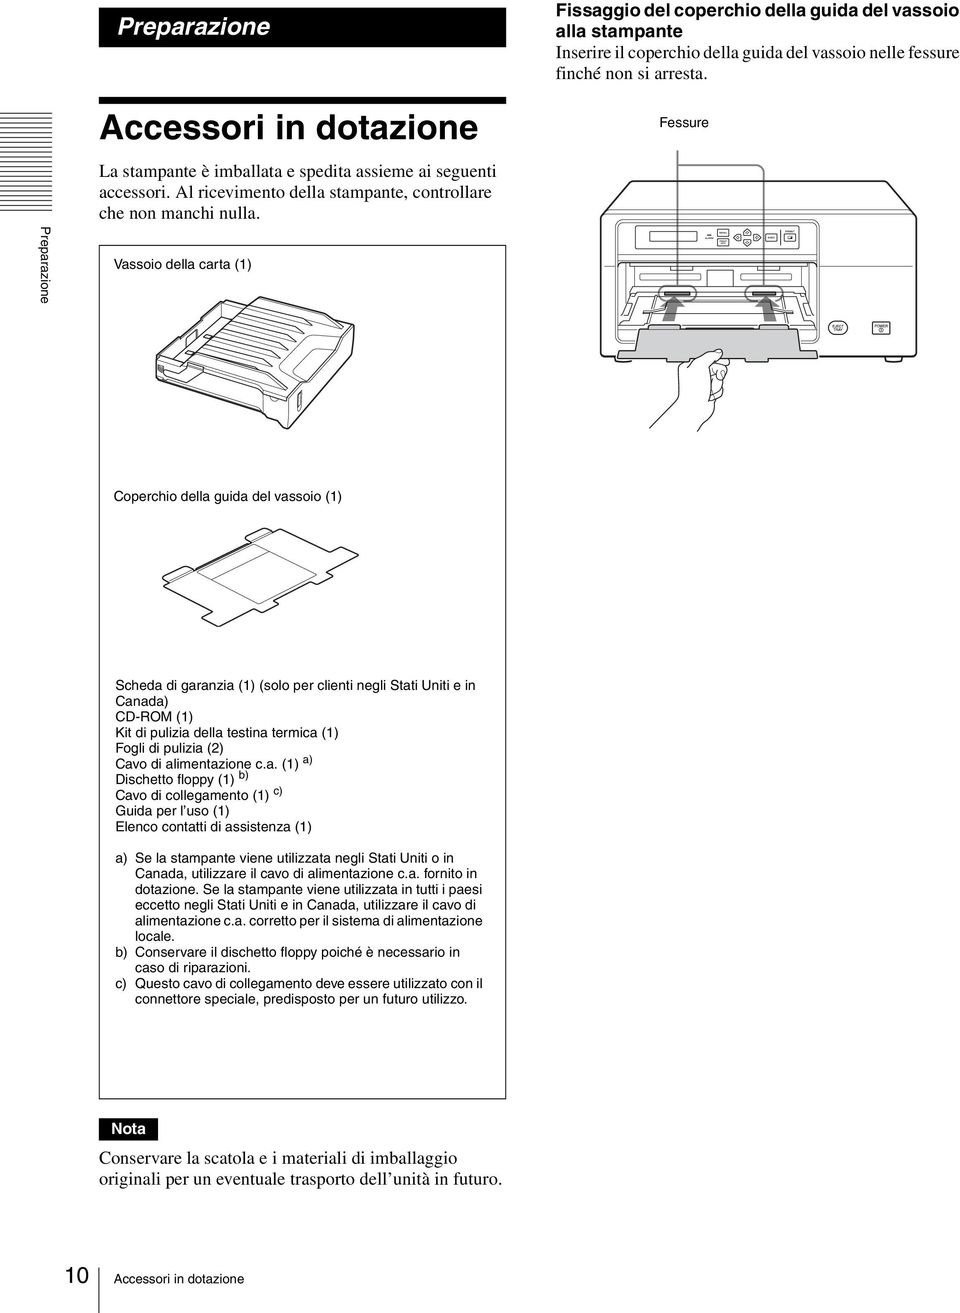 Vassoio della carta (1) Fessure Coperchio della guida del vassoio (1) Scheda di garanzia (1) (solo per clienti negli Stati Uniti e in Canada) CD-ROM (1) Kit di pulizia della testina termica (1) Fogli